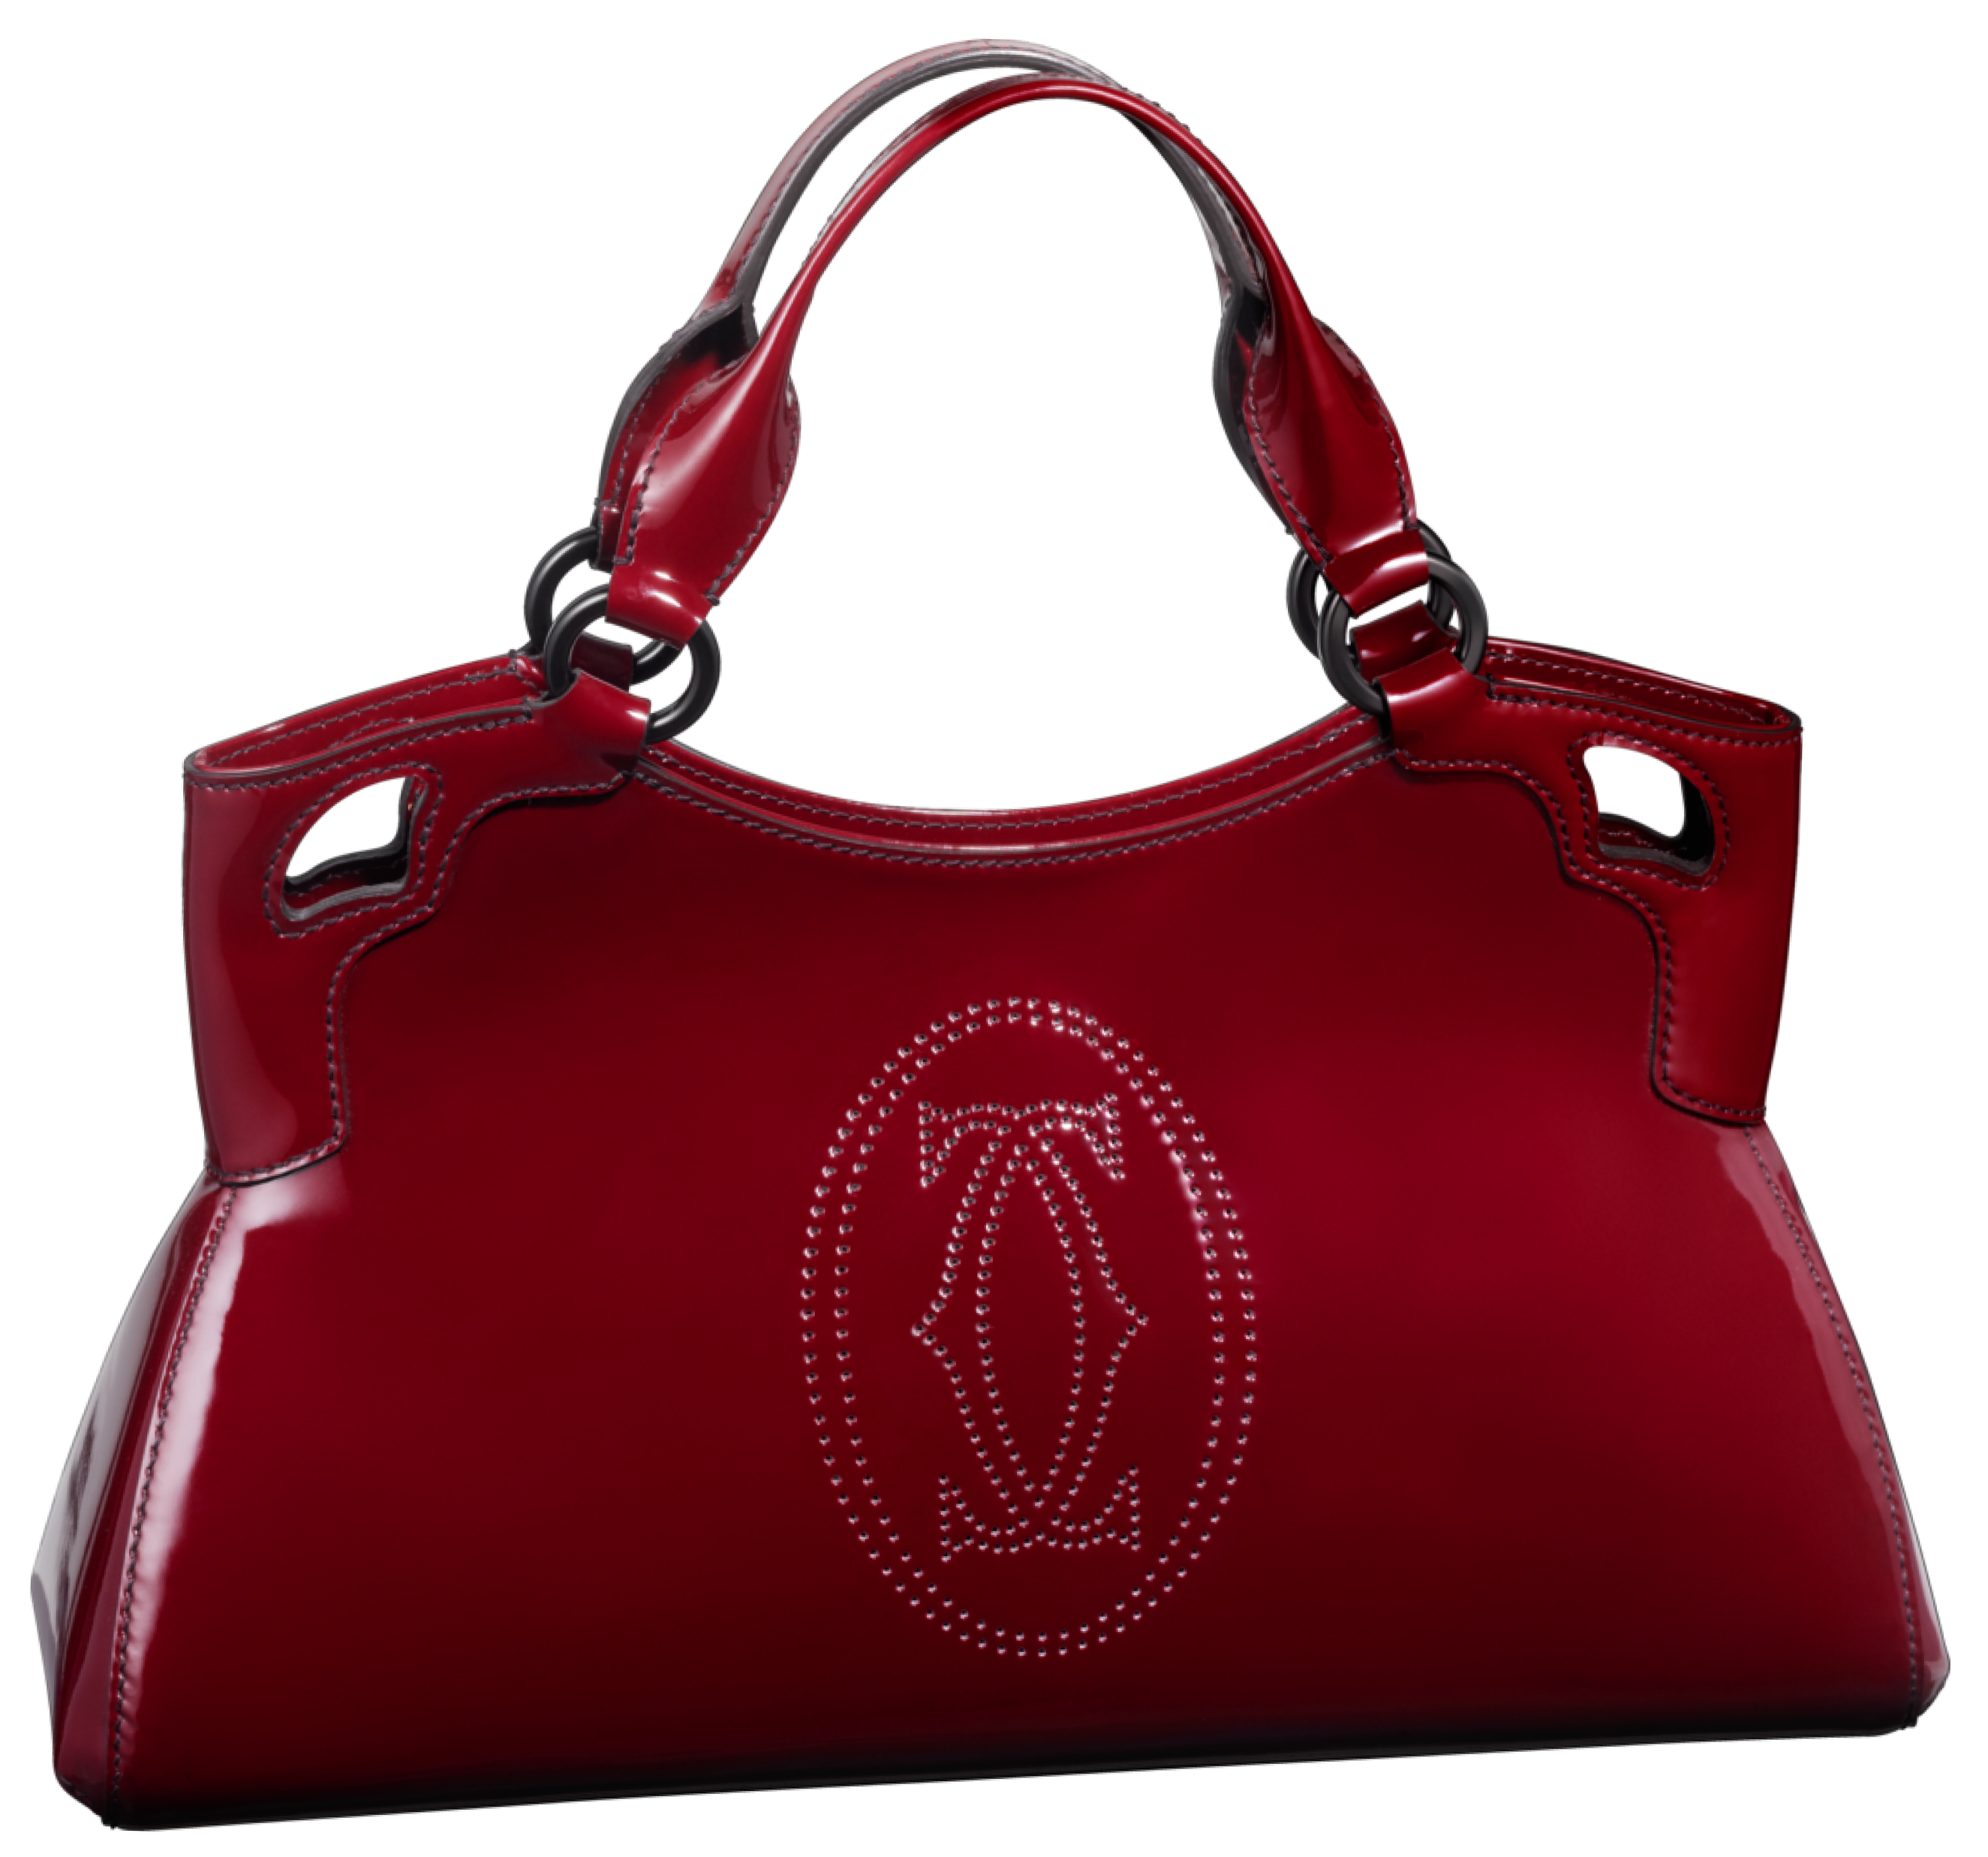 Red Cartier Handbag PNG Clip Art - Best 